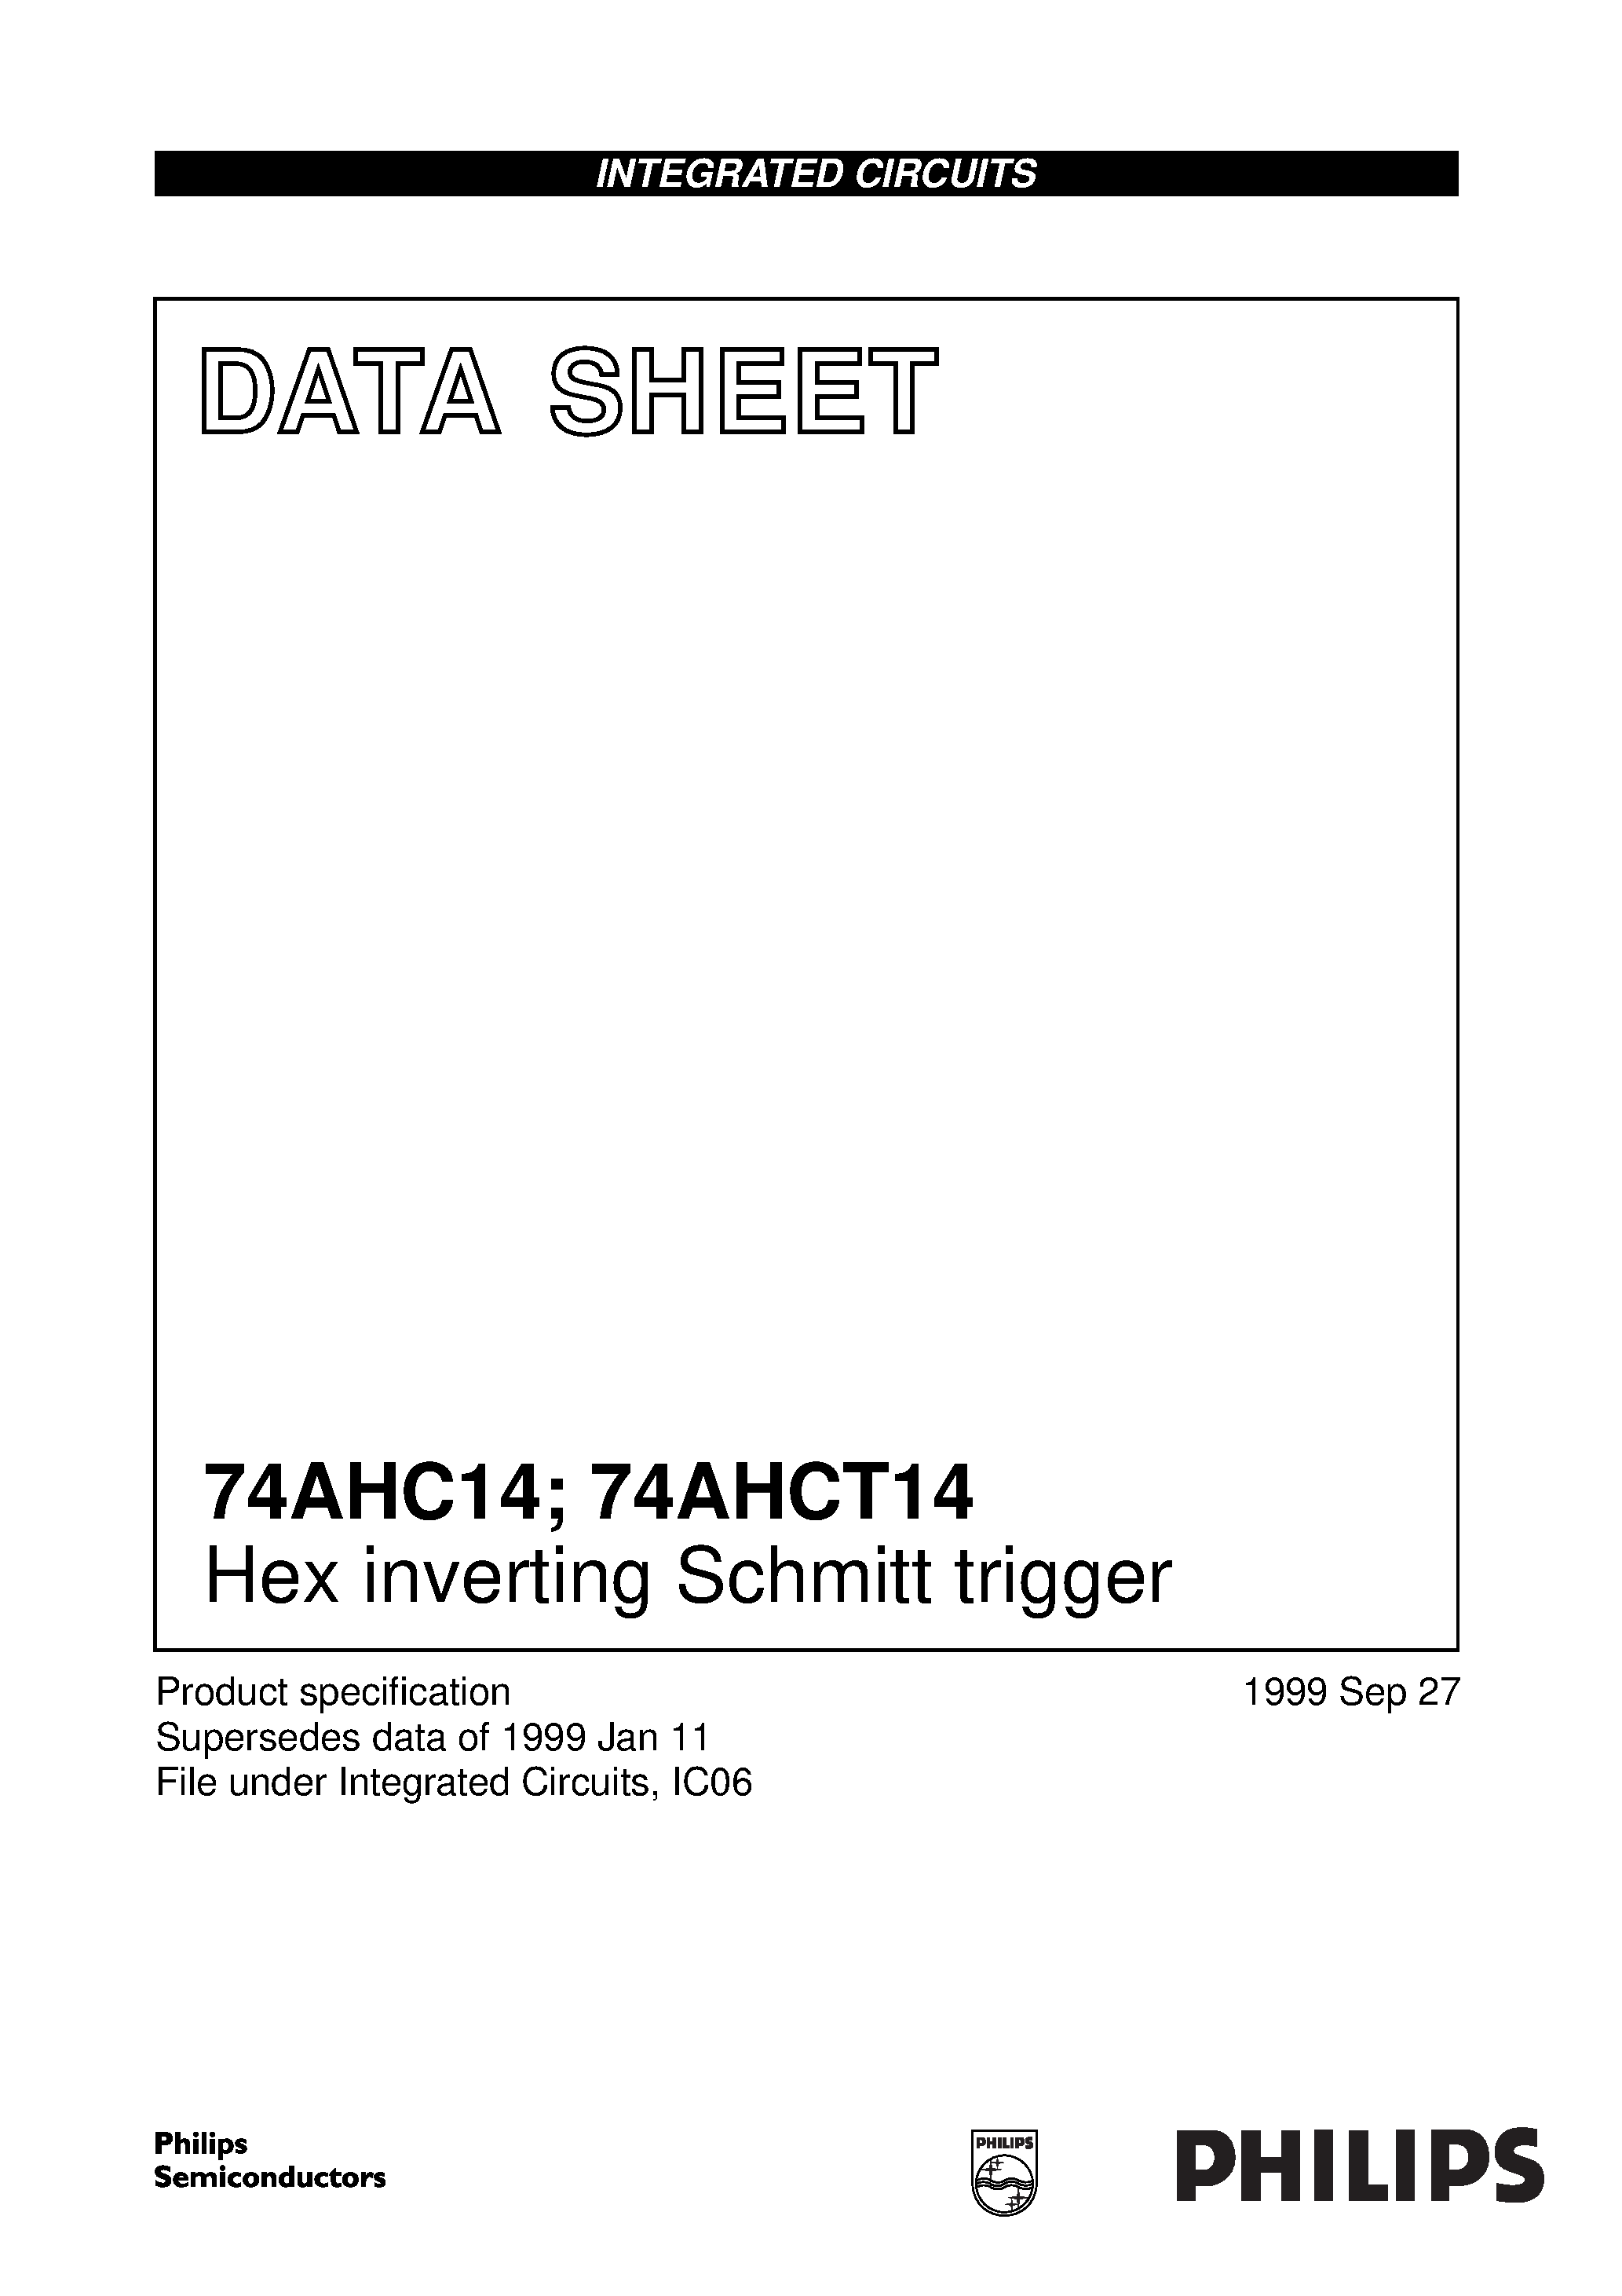 Datasheet 74AHC14D - Hex inverting Schmitt trigger page 1